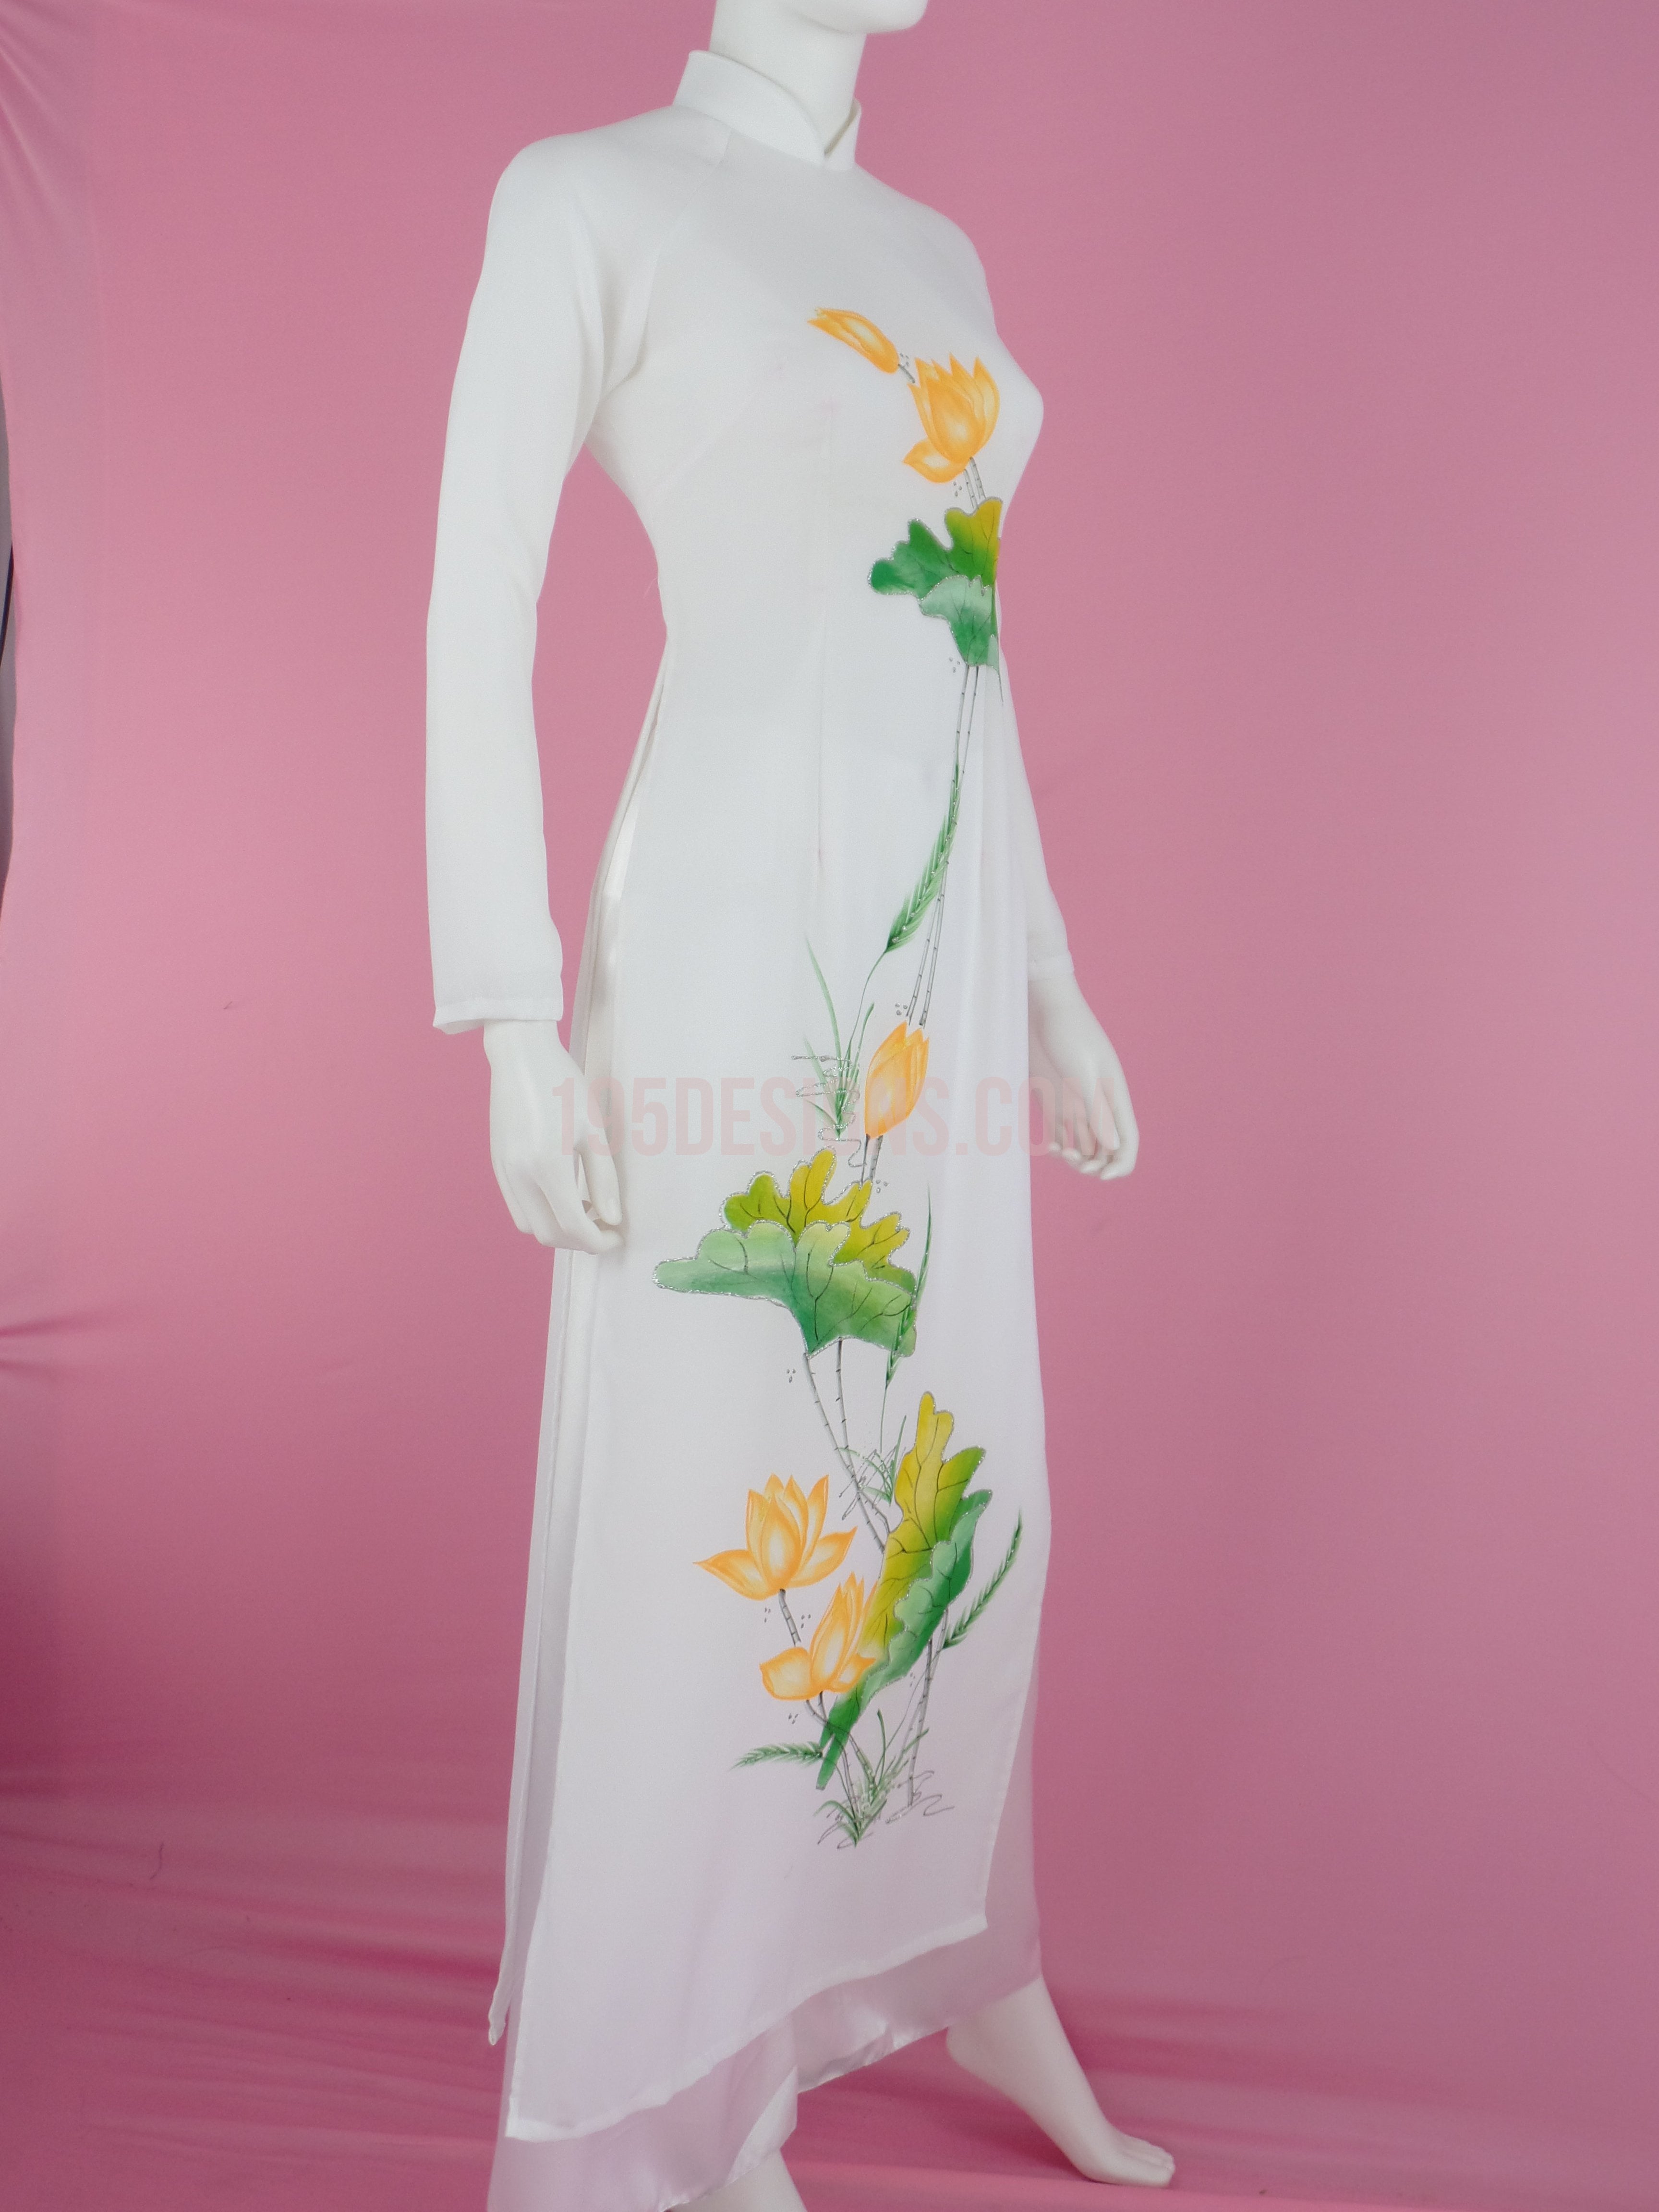 Áo dài Sen Trắng là bộ trang phục truyền thống tuyệt đẹp của người Việt Nam. Màu sắc trắng tinh khôi kết hợp với hoa sen tượng trưng cho sự thanh cao và tinh túy của văn hóa Việt sẽ khiến bạn thật sự nổi bật trong các sự kiện quan trọng.